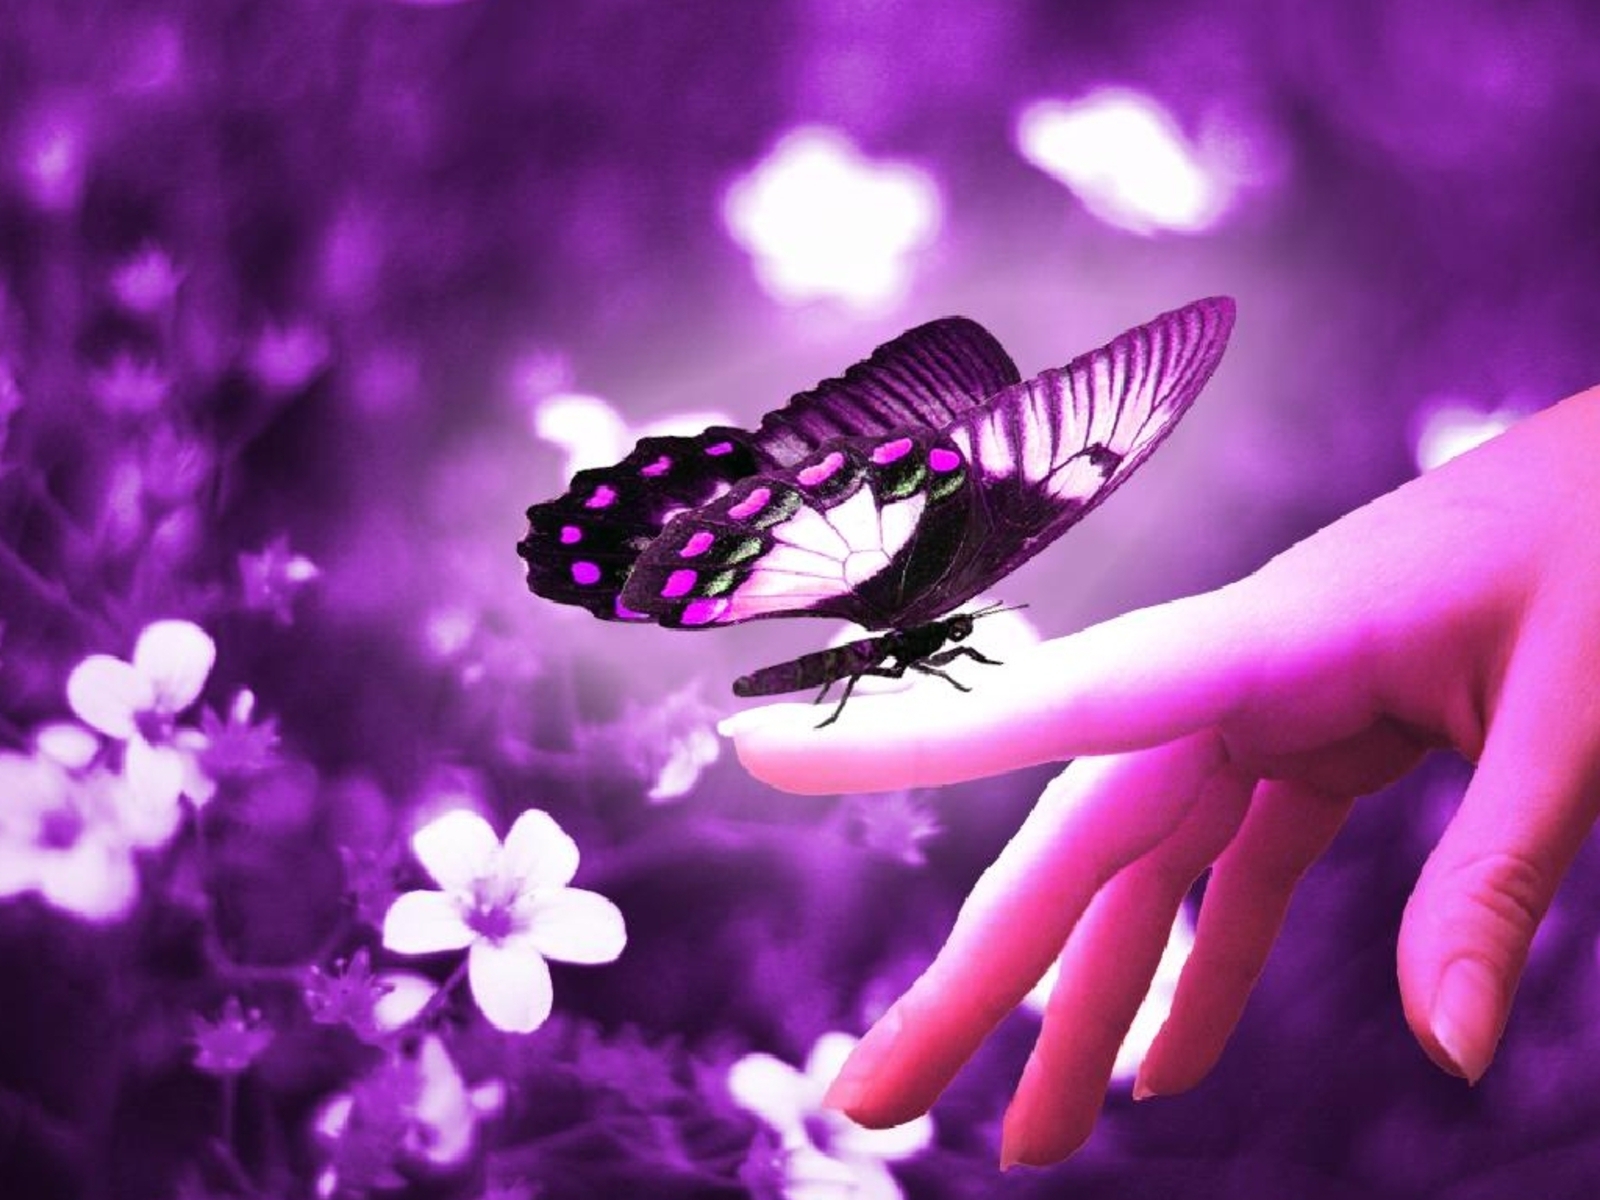 Beautiful-Butterflies-butterflies-9481170-1600-1200.jpg